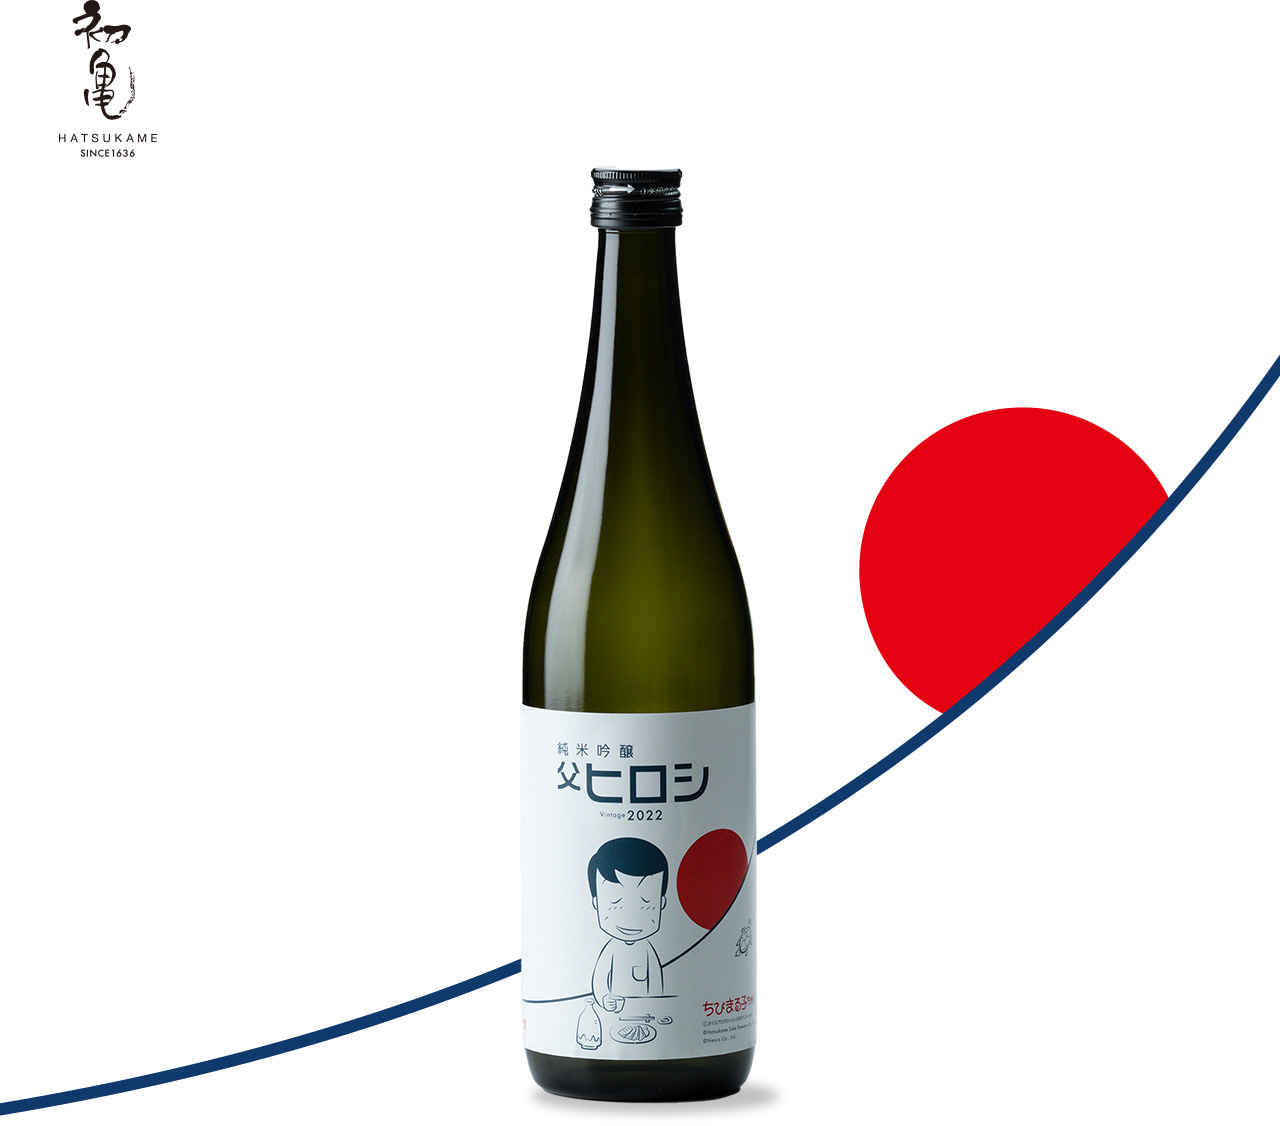 ちびまる子ちゃん』と「初亀醸造株式会社」の日本酒